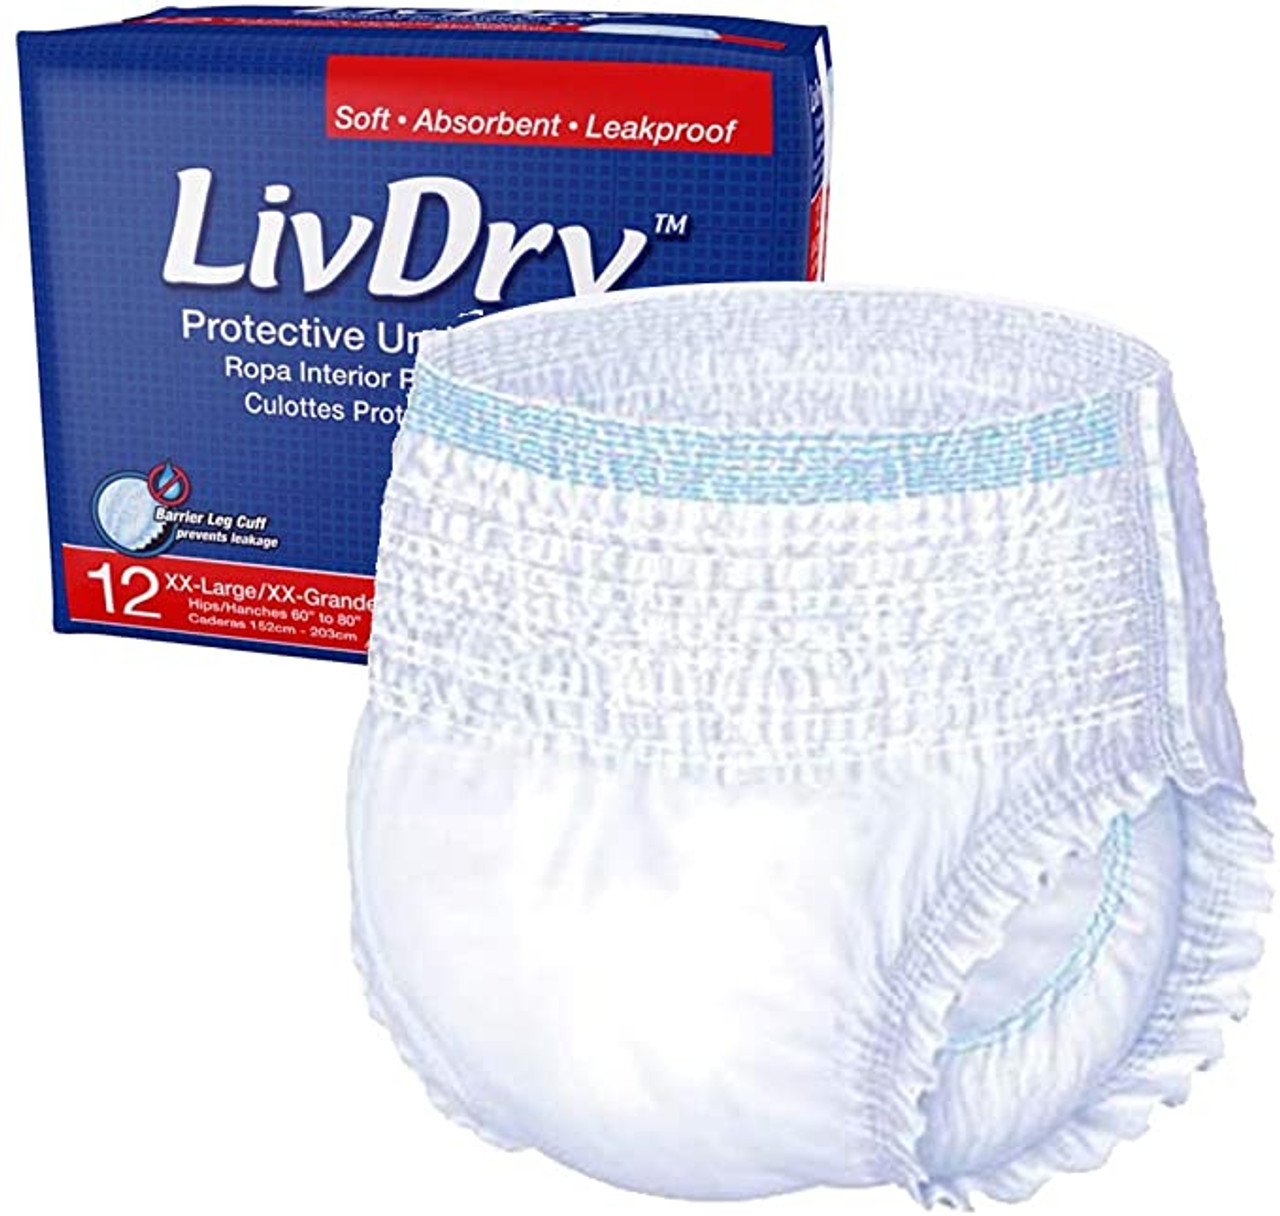 Adult Briefs Daytime, Daytime Disposable Absorbent Underwear